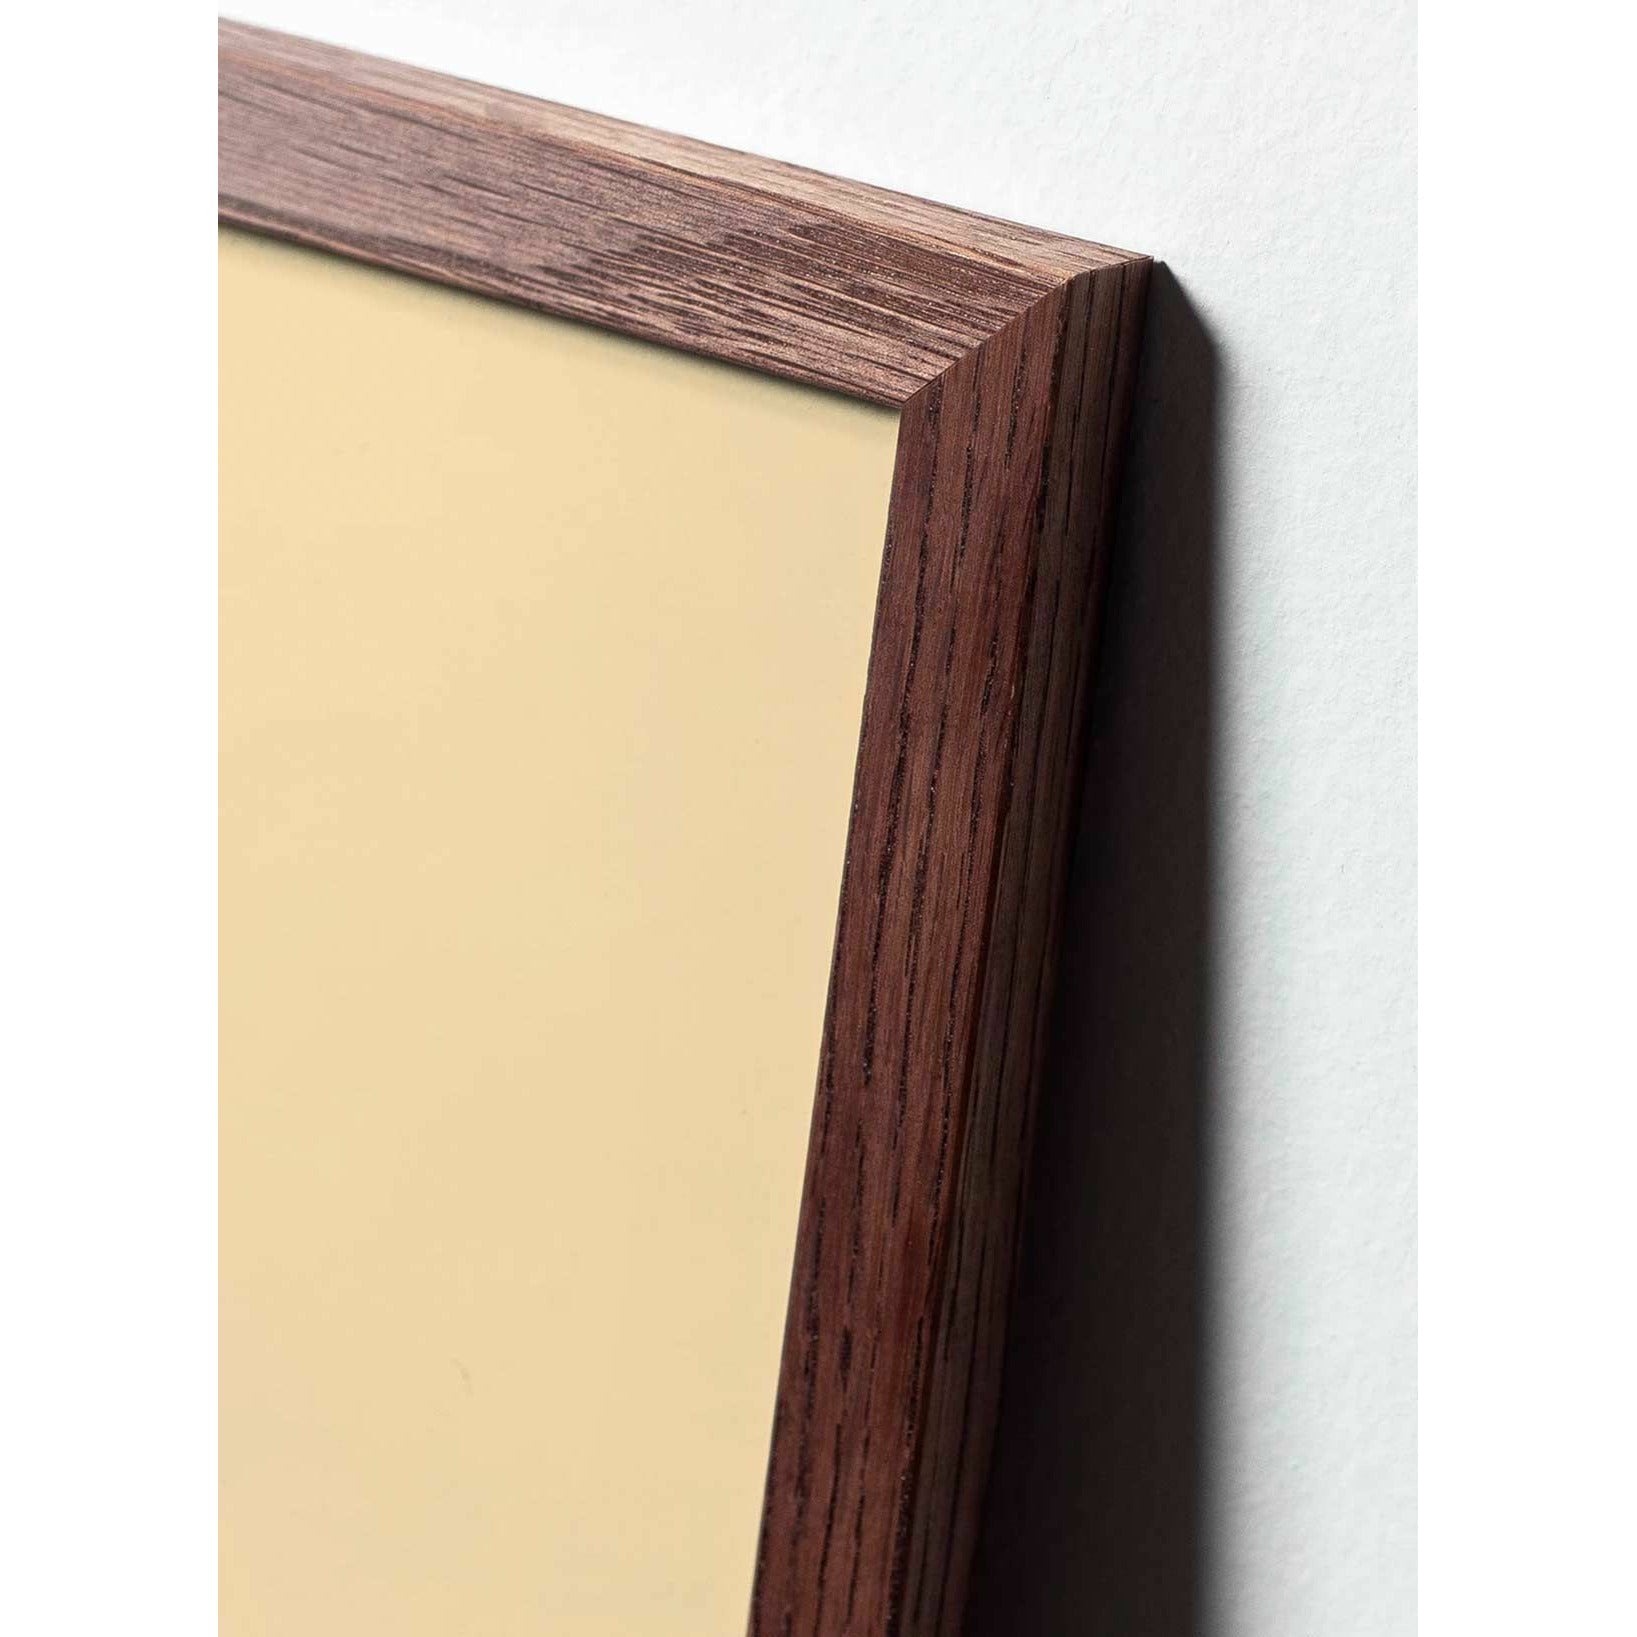 Póster de línea de caída de creación, marco hecho de madera oscura de 30x40 cm, fondo blanco